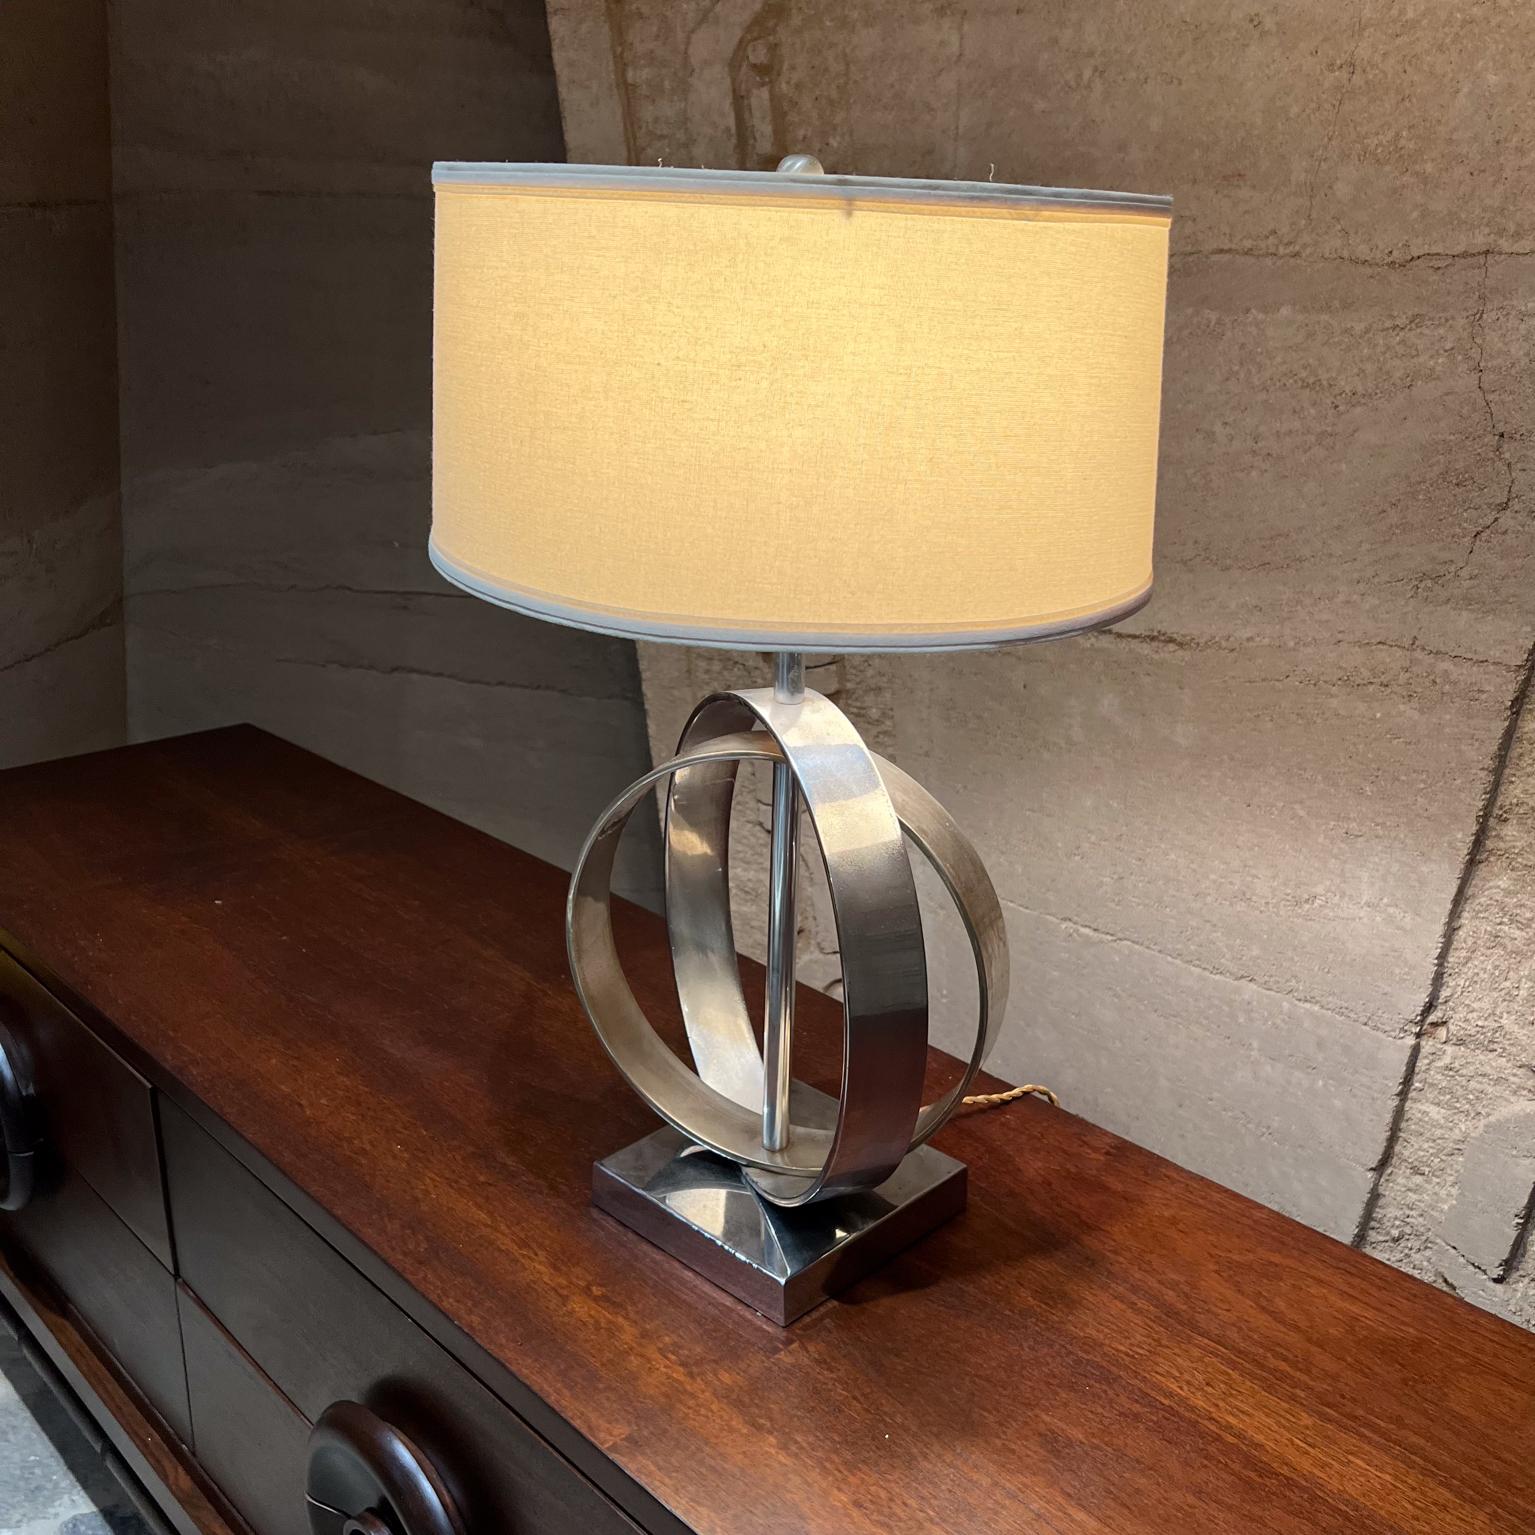 1970 Unique lampe en chrome de forme sculpturale
Anneaux concentriques sur base carrée chromée. 
Non marqué
20,5 h x 12,5 l x 7,13 p
État d'origine chromé avec patine vintage, le chrome n'est pas parfait. 
Remise à neuf du câblage, nouvelle